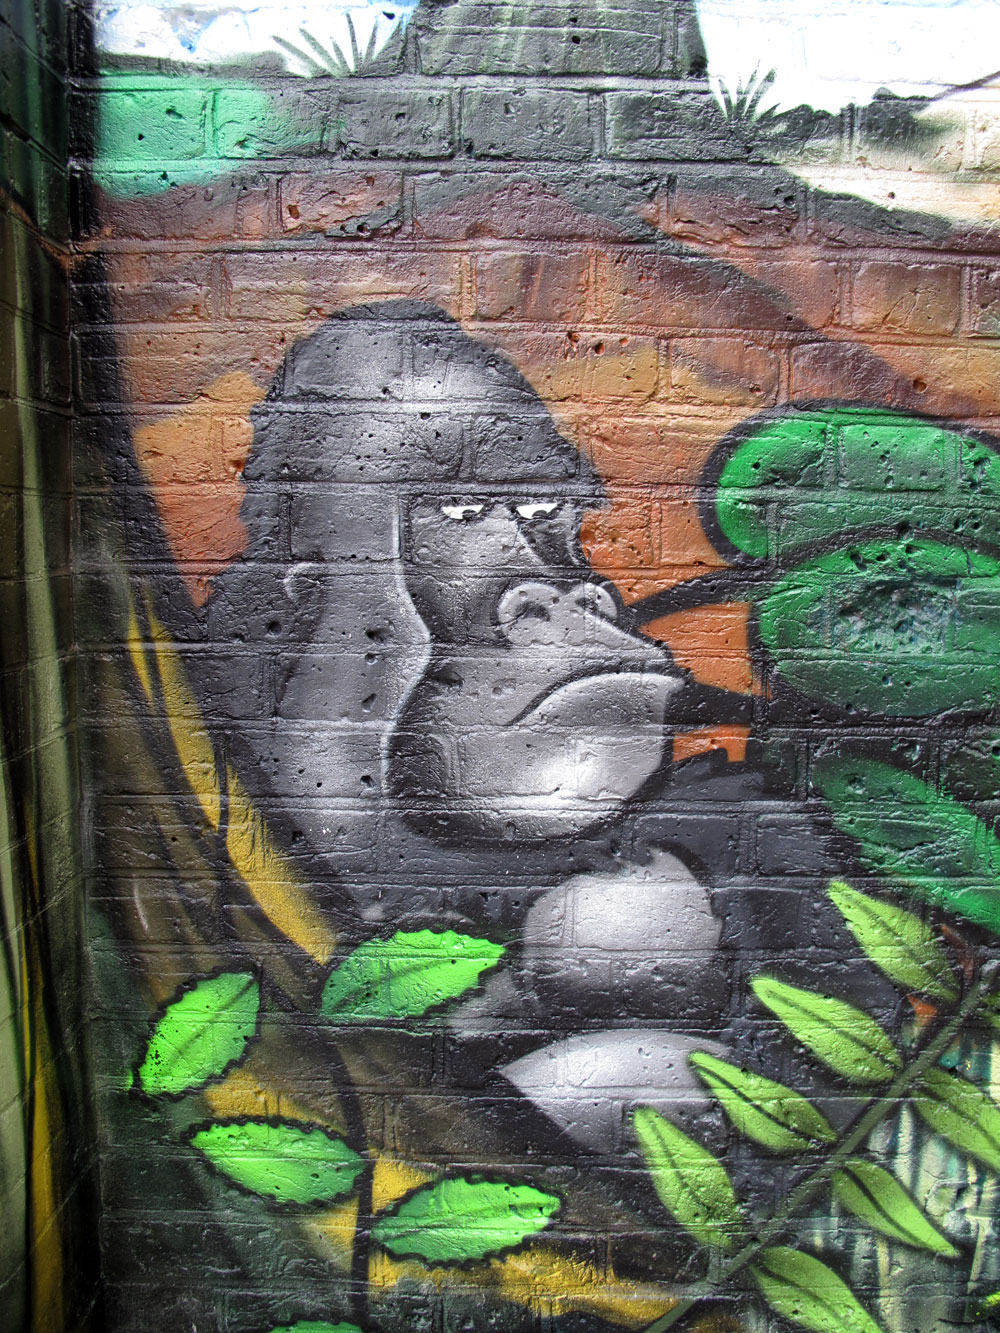 london graffiti mural workshop